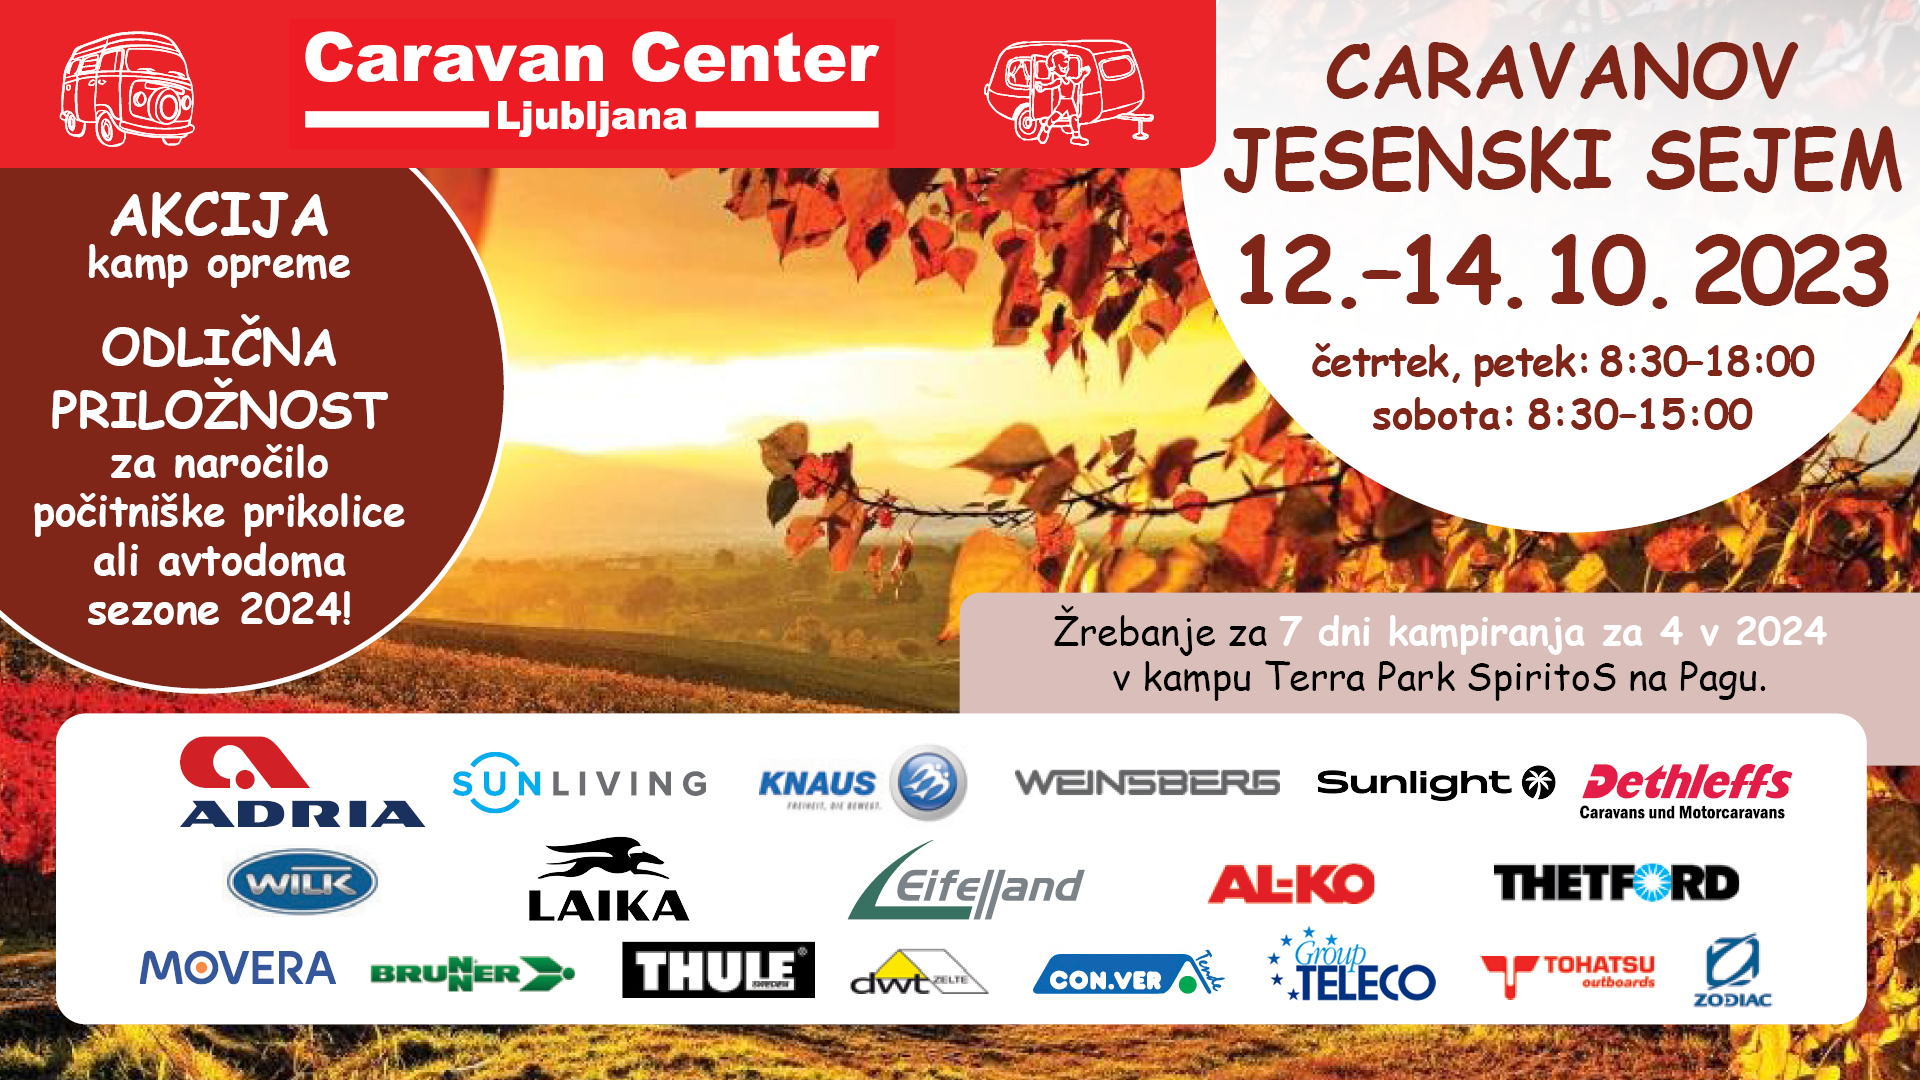 Caravan Center Ljubljana - jesenski hišni sejem 2023 - Avtokampi.si